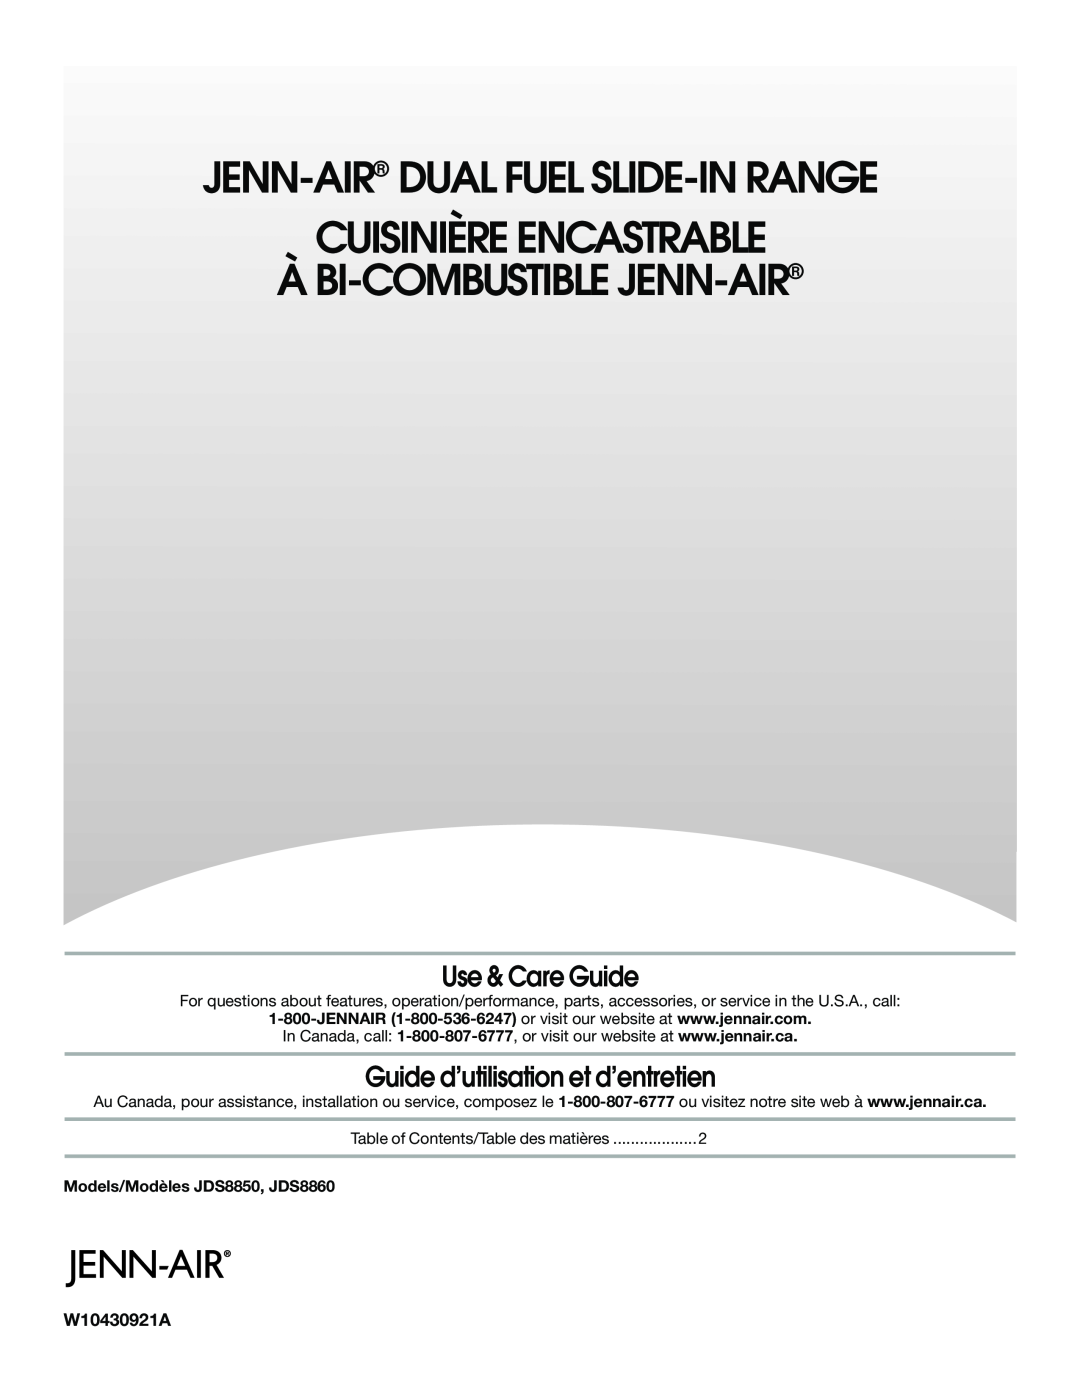 Jenn-Air JDS8860 manual Jenn-Air Dual Fuel Slide-Inrange, Cuisinière Encastrable À, Double Combustible Jenn-Air 